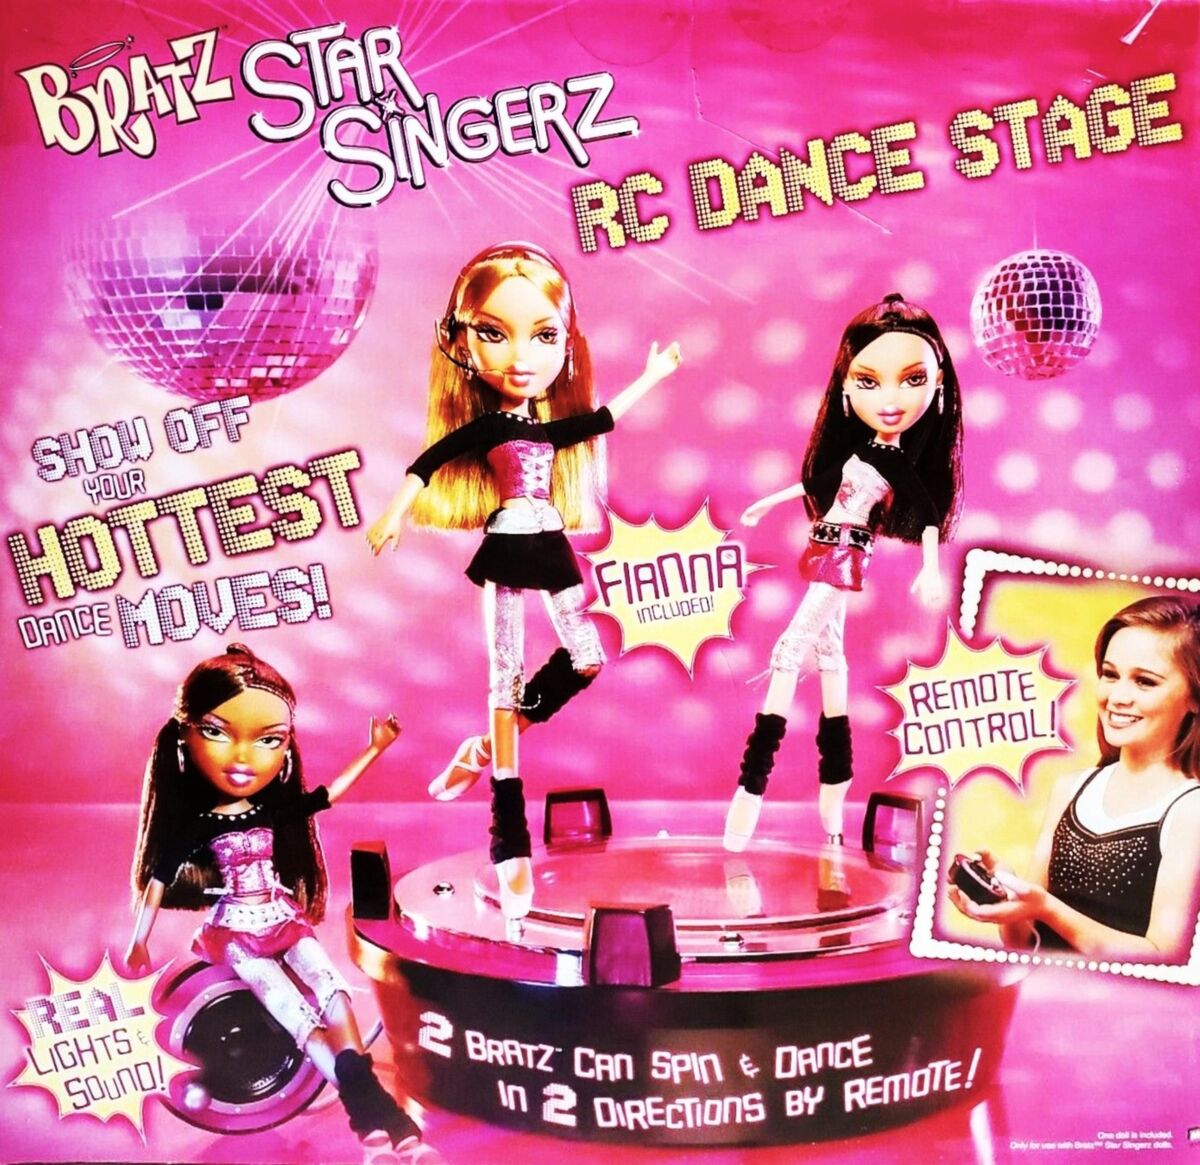 Star Singerz RC Dance Stage, Bratz Wiki